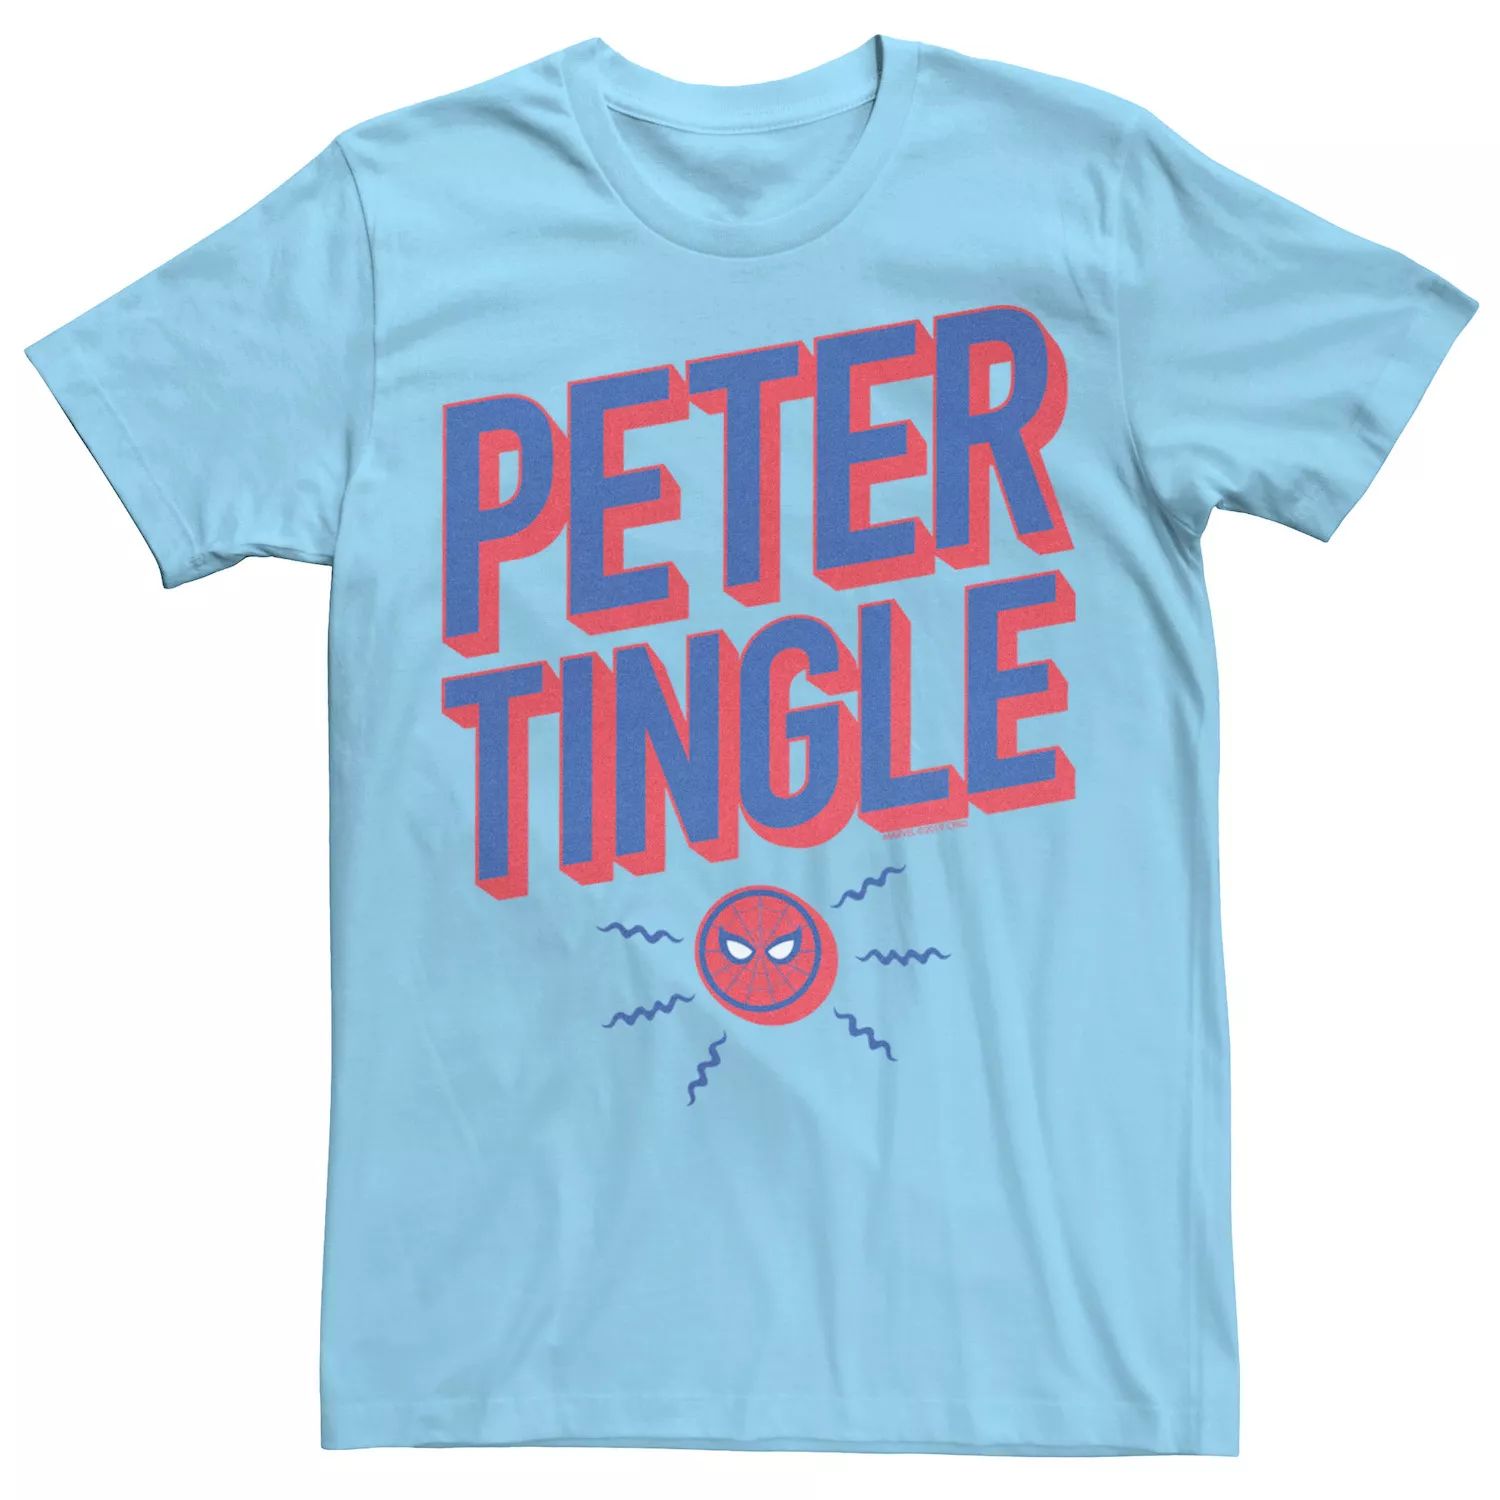 Мужская футболка с рисунком «Человек-паук Marvel вдали от дома» «Питер Тингл» с жирным текстом и графикой